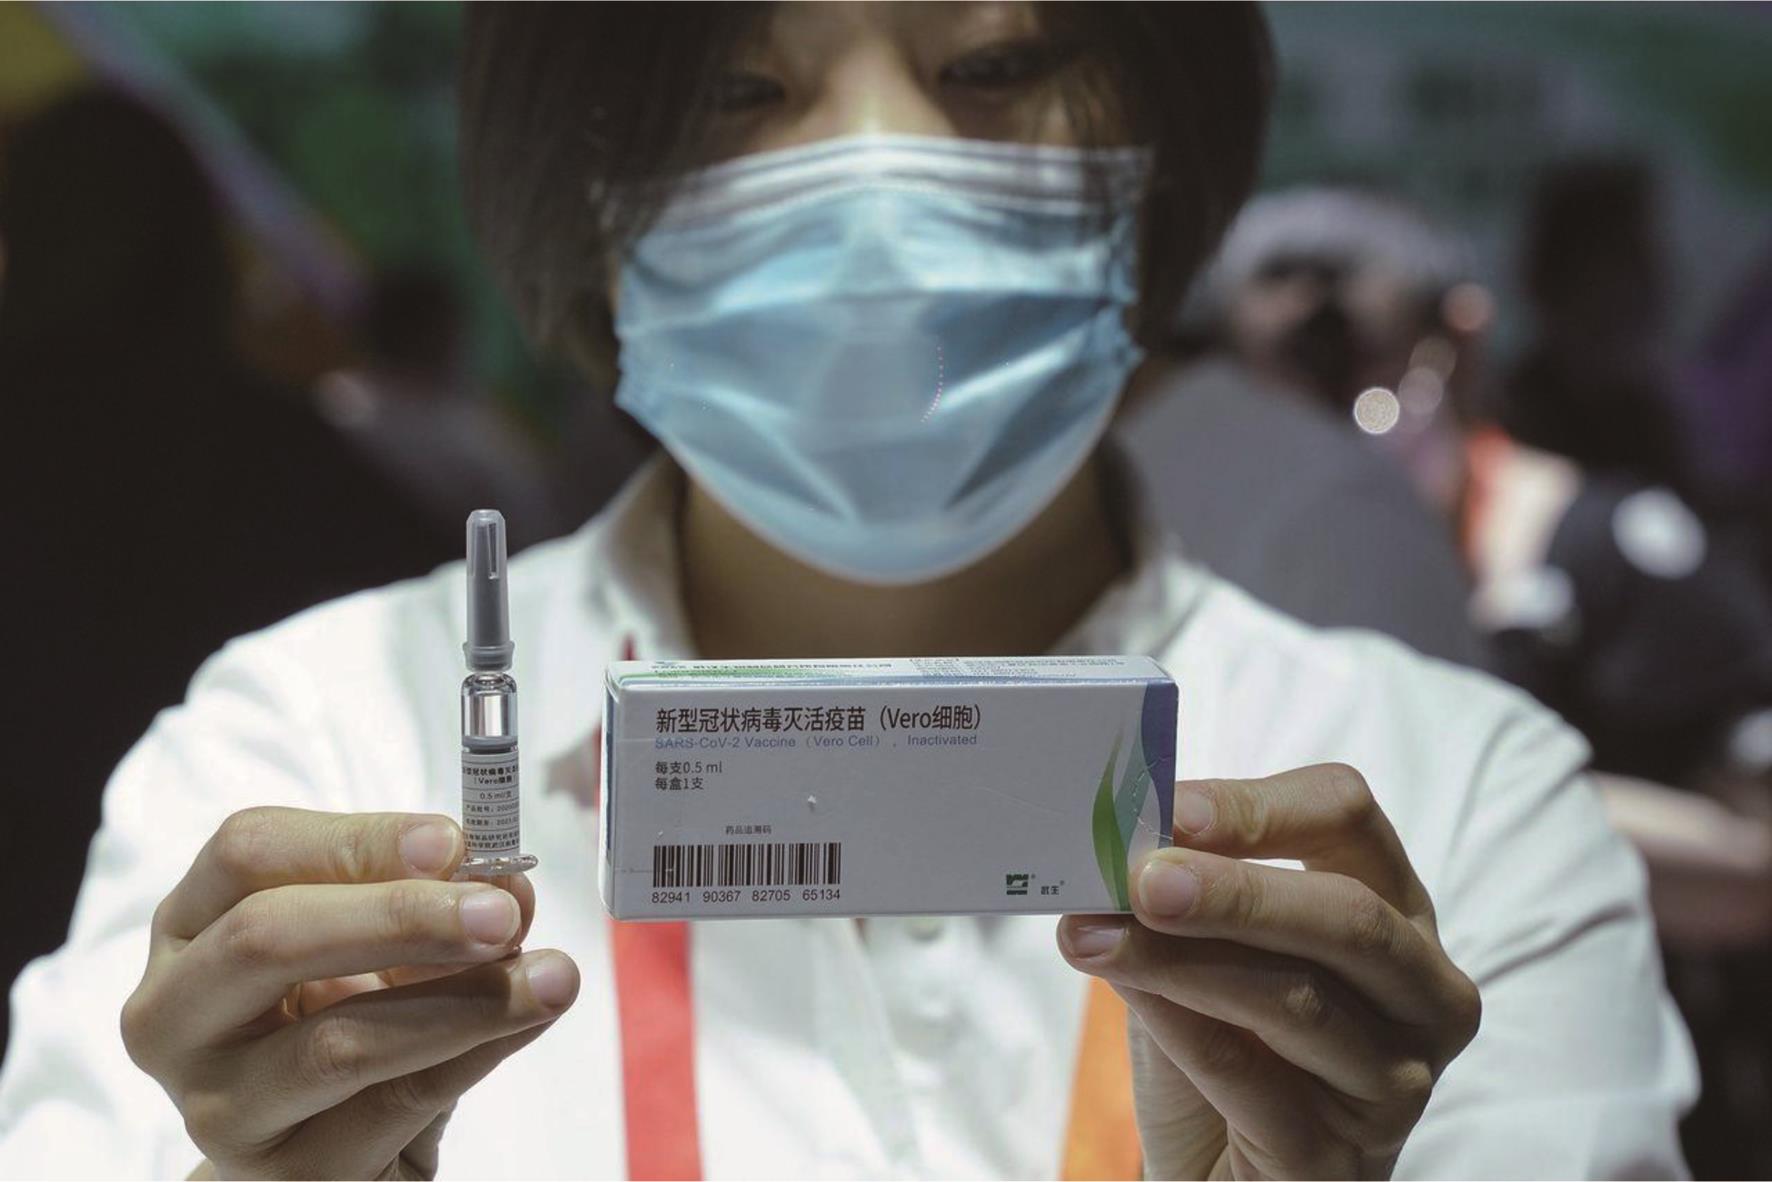 中国生物新型冠状病毒灭活疫苗。